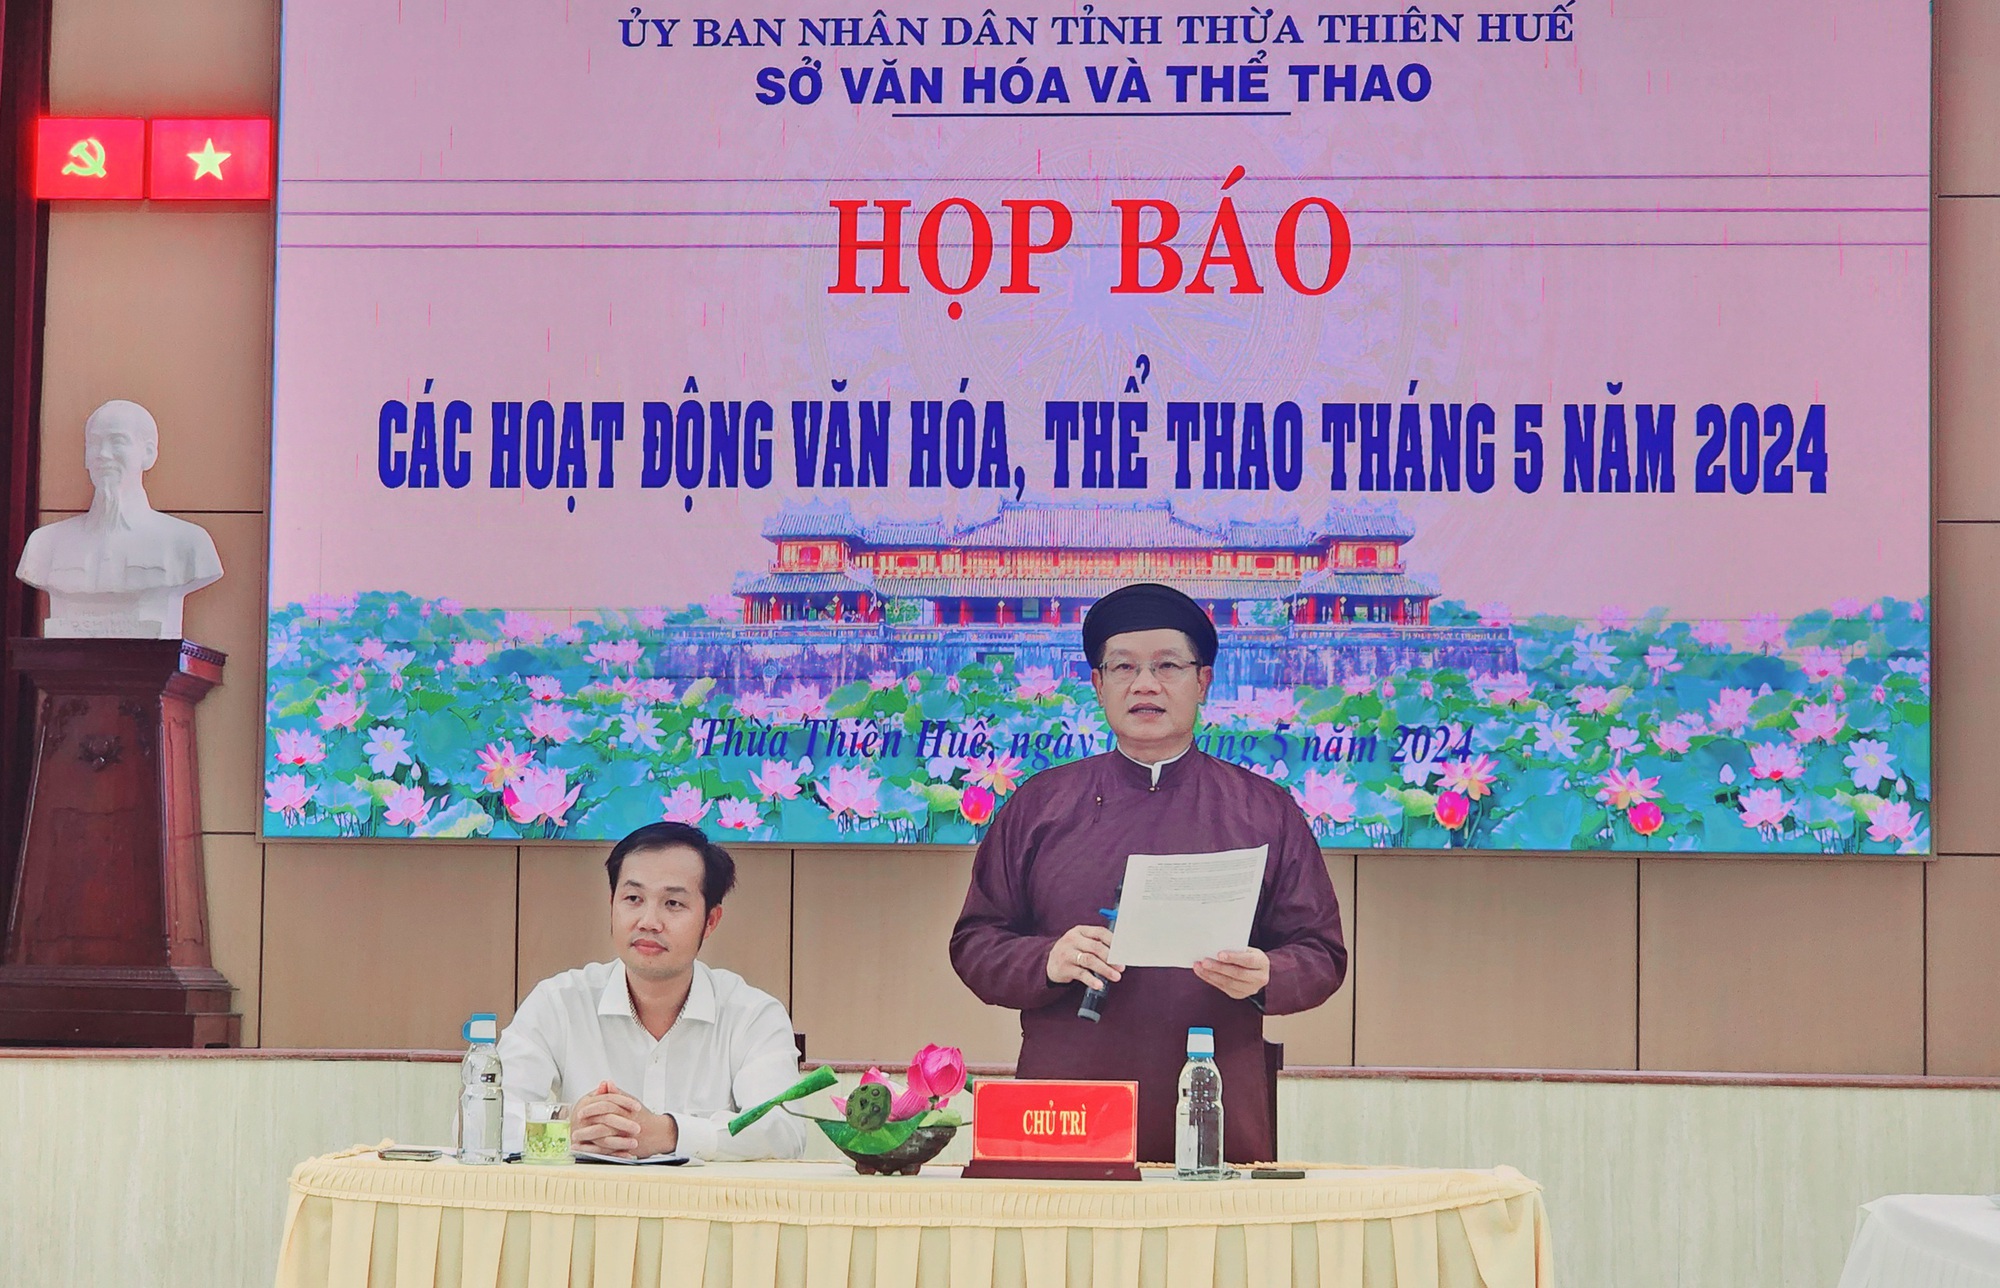 Tổ chức Ngày hội Văn hóa, Thể thao và Du lịch các dân tộc tỉnh Thừa Thiên Huế lần thứ XV - Ảnh 1.